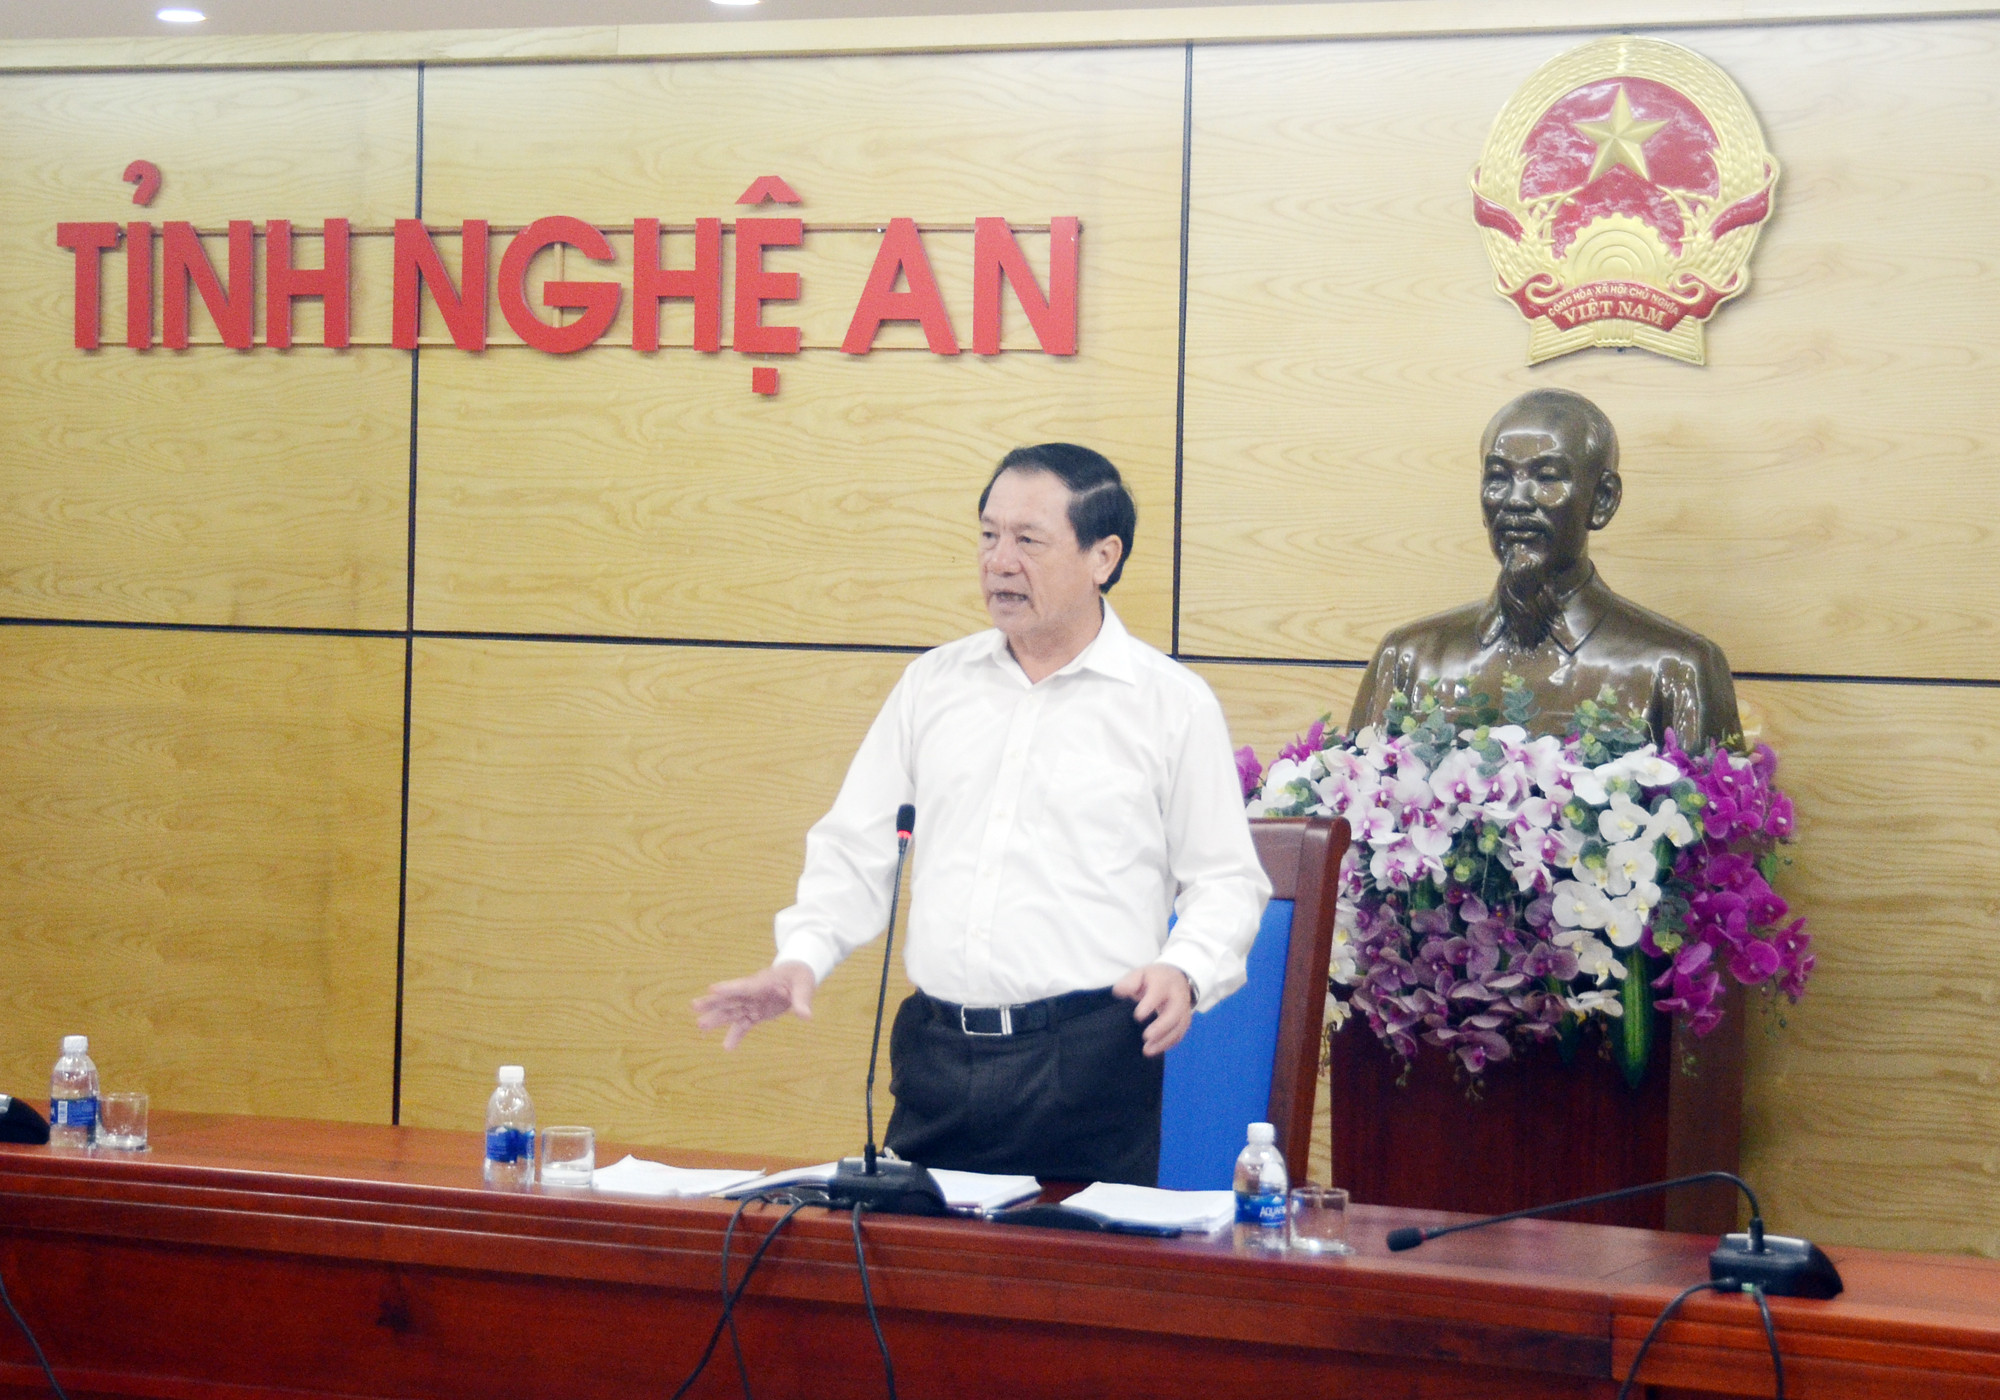 Phó Chủ tịch UBND tỉnh Lê Minh Thông đồng thuận với đề xuất của Sở Y tế và cho rằng chỉ tiêu giường bệnh hiện nay đang kìm hãm sự phát triển của các bệnh viện. Ảnh: Thành Chung